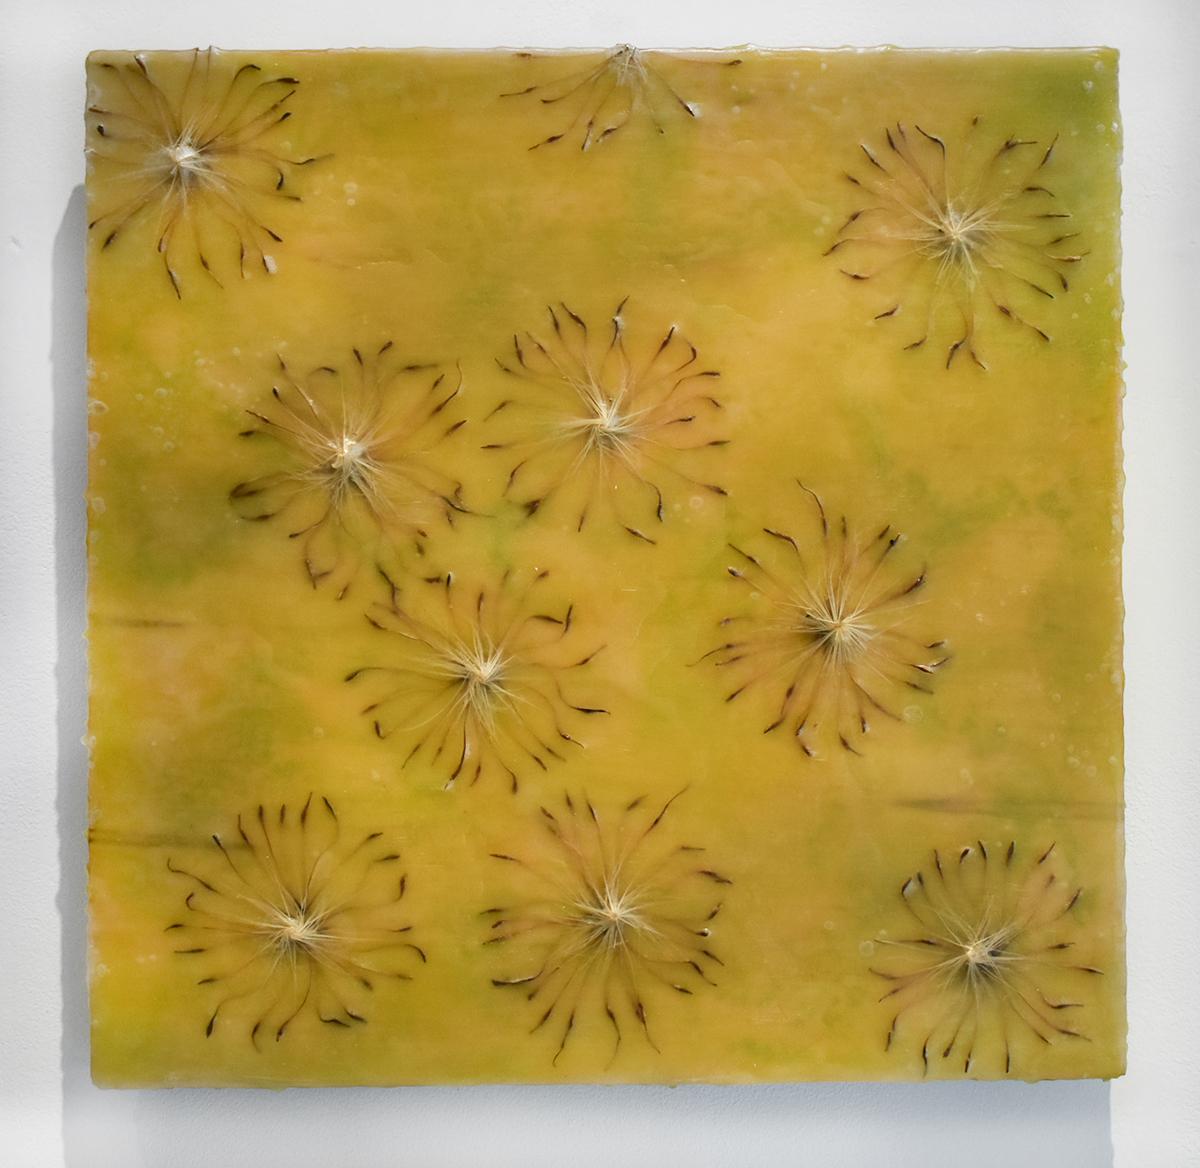 Cynara Shine: Abstraktes ztrongelbes Enkaustikgemälde auf Tafel mit Disteln – Painting von Allyson Levy